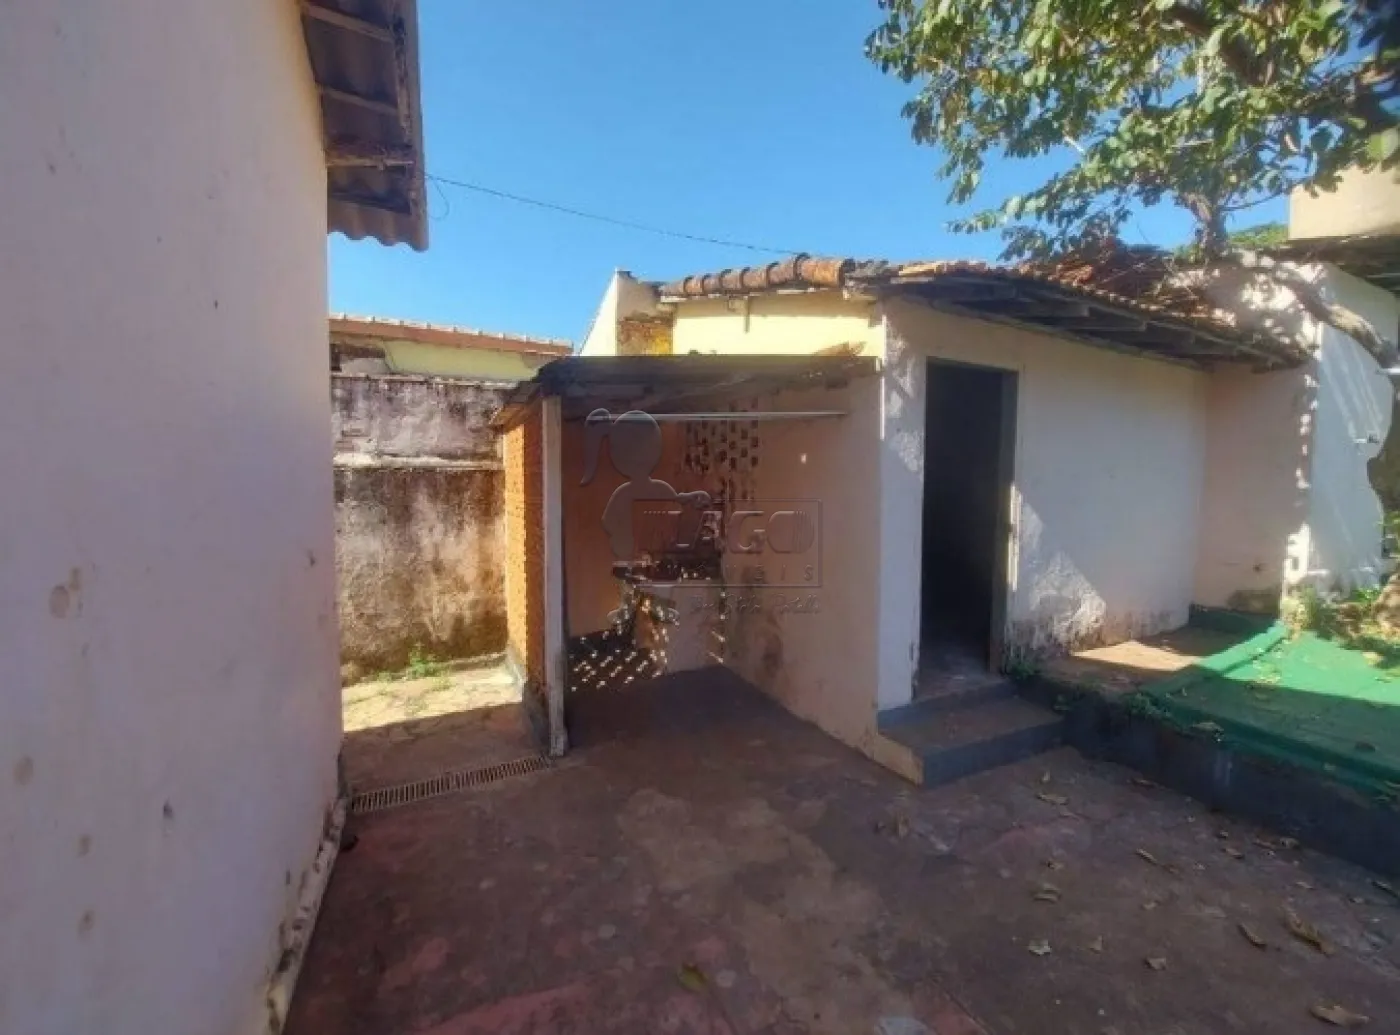 Alugar Casa / Padrão em Ribeirão Preto R$ 1.000,00 - Foto 10